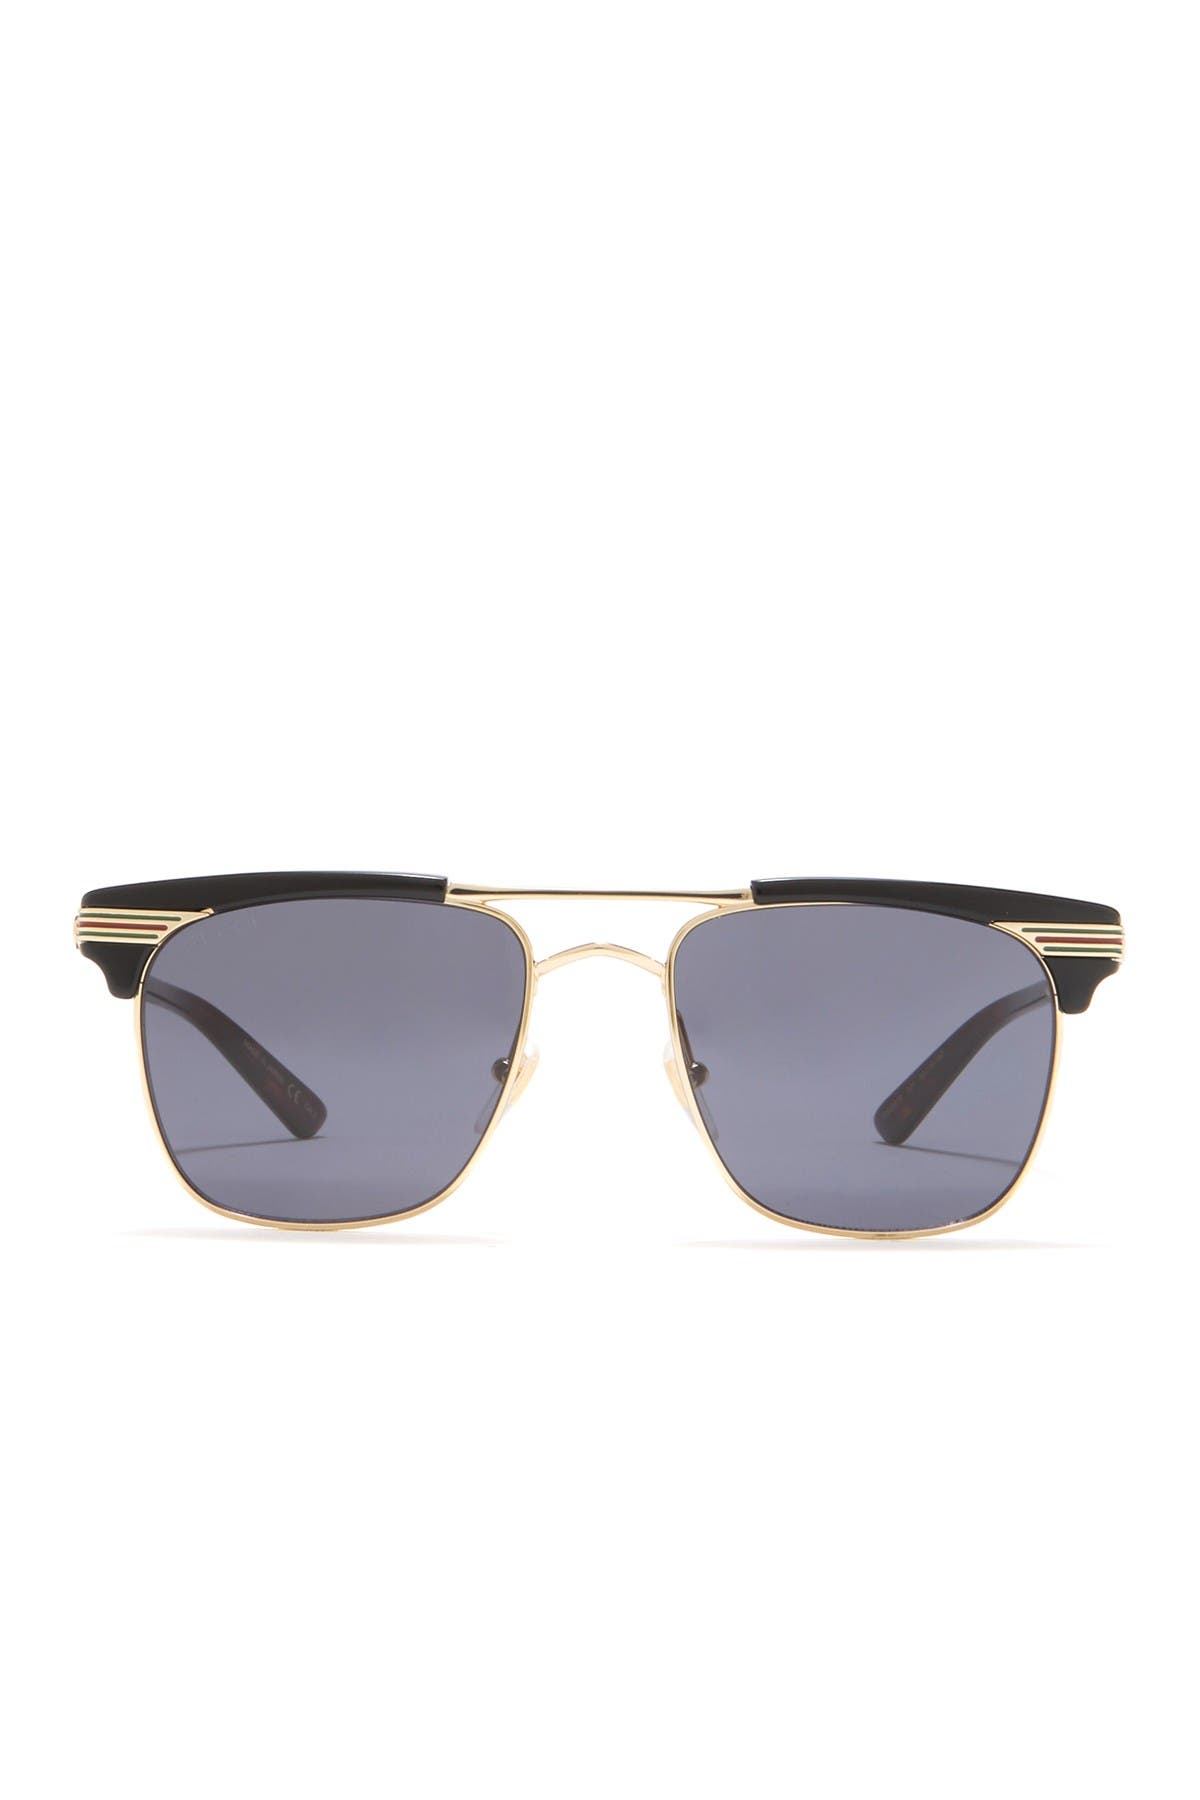 gucci 52mm clubmaster sunglasses